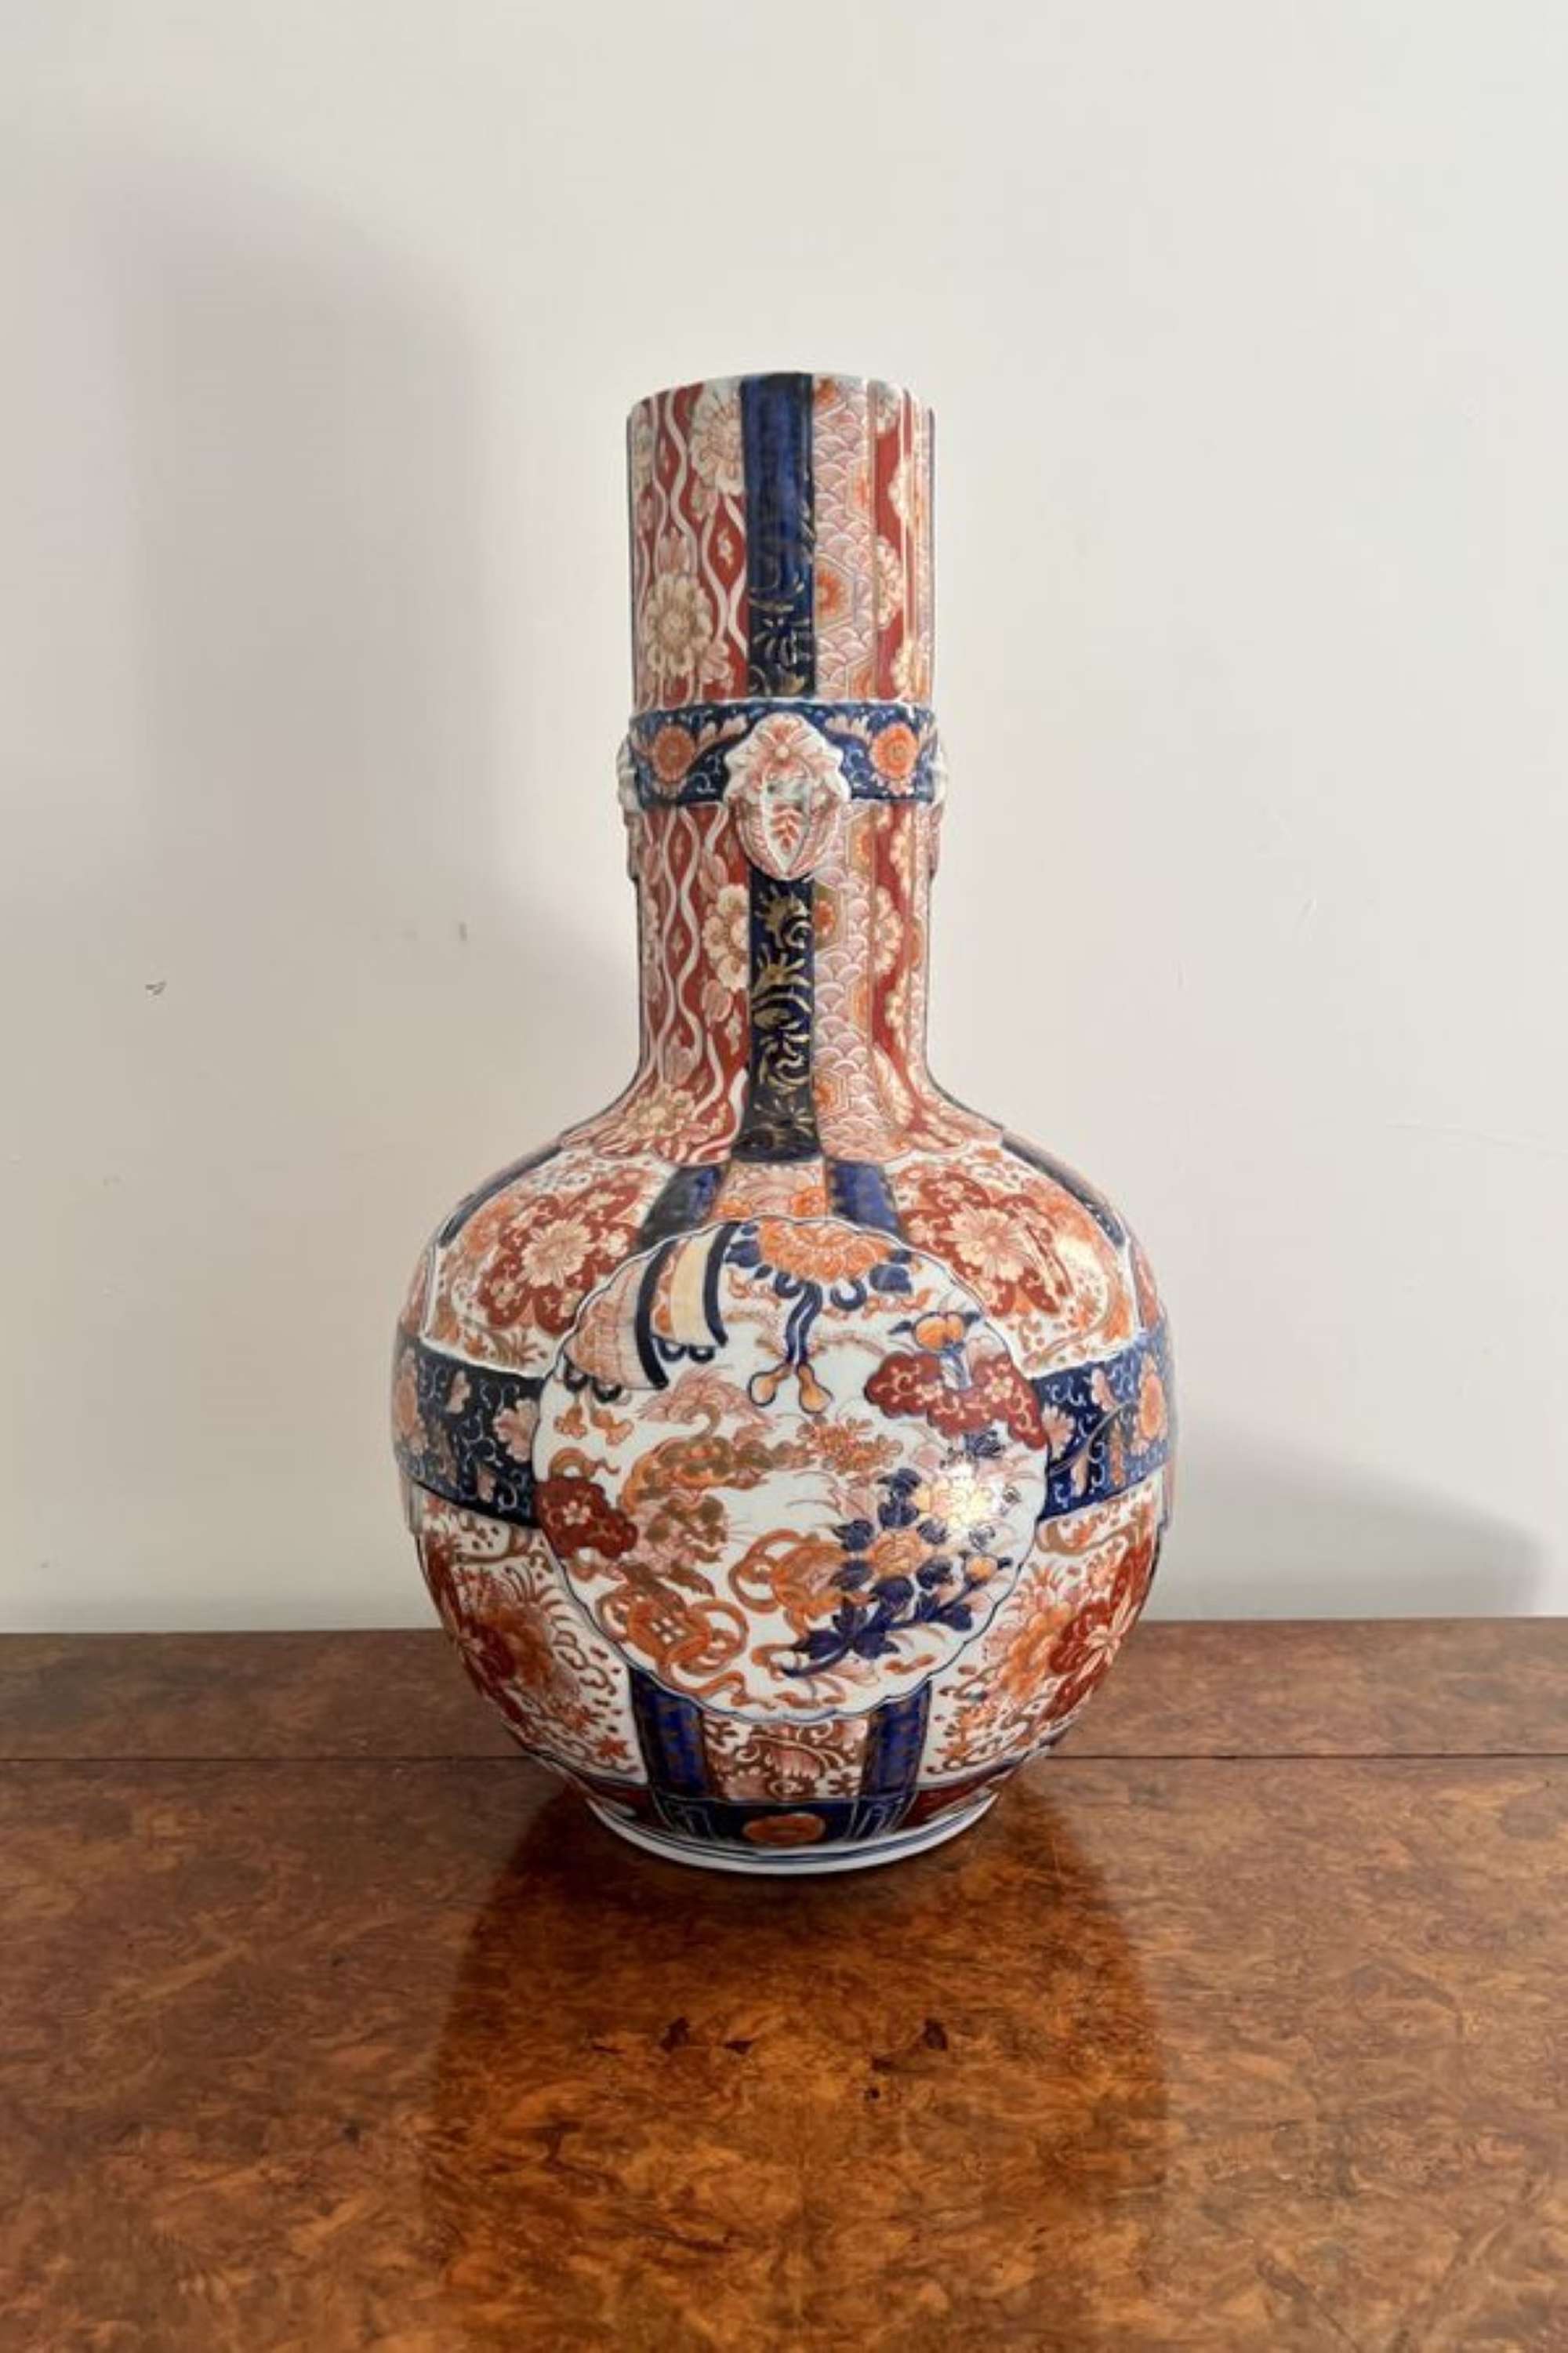 Superb quality unusual large antique 19th century Japanese Imari vase